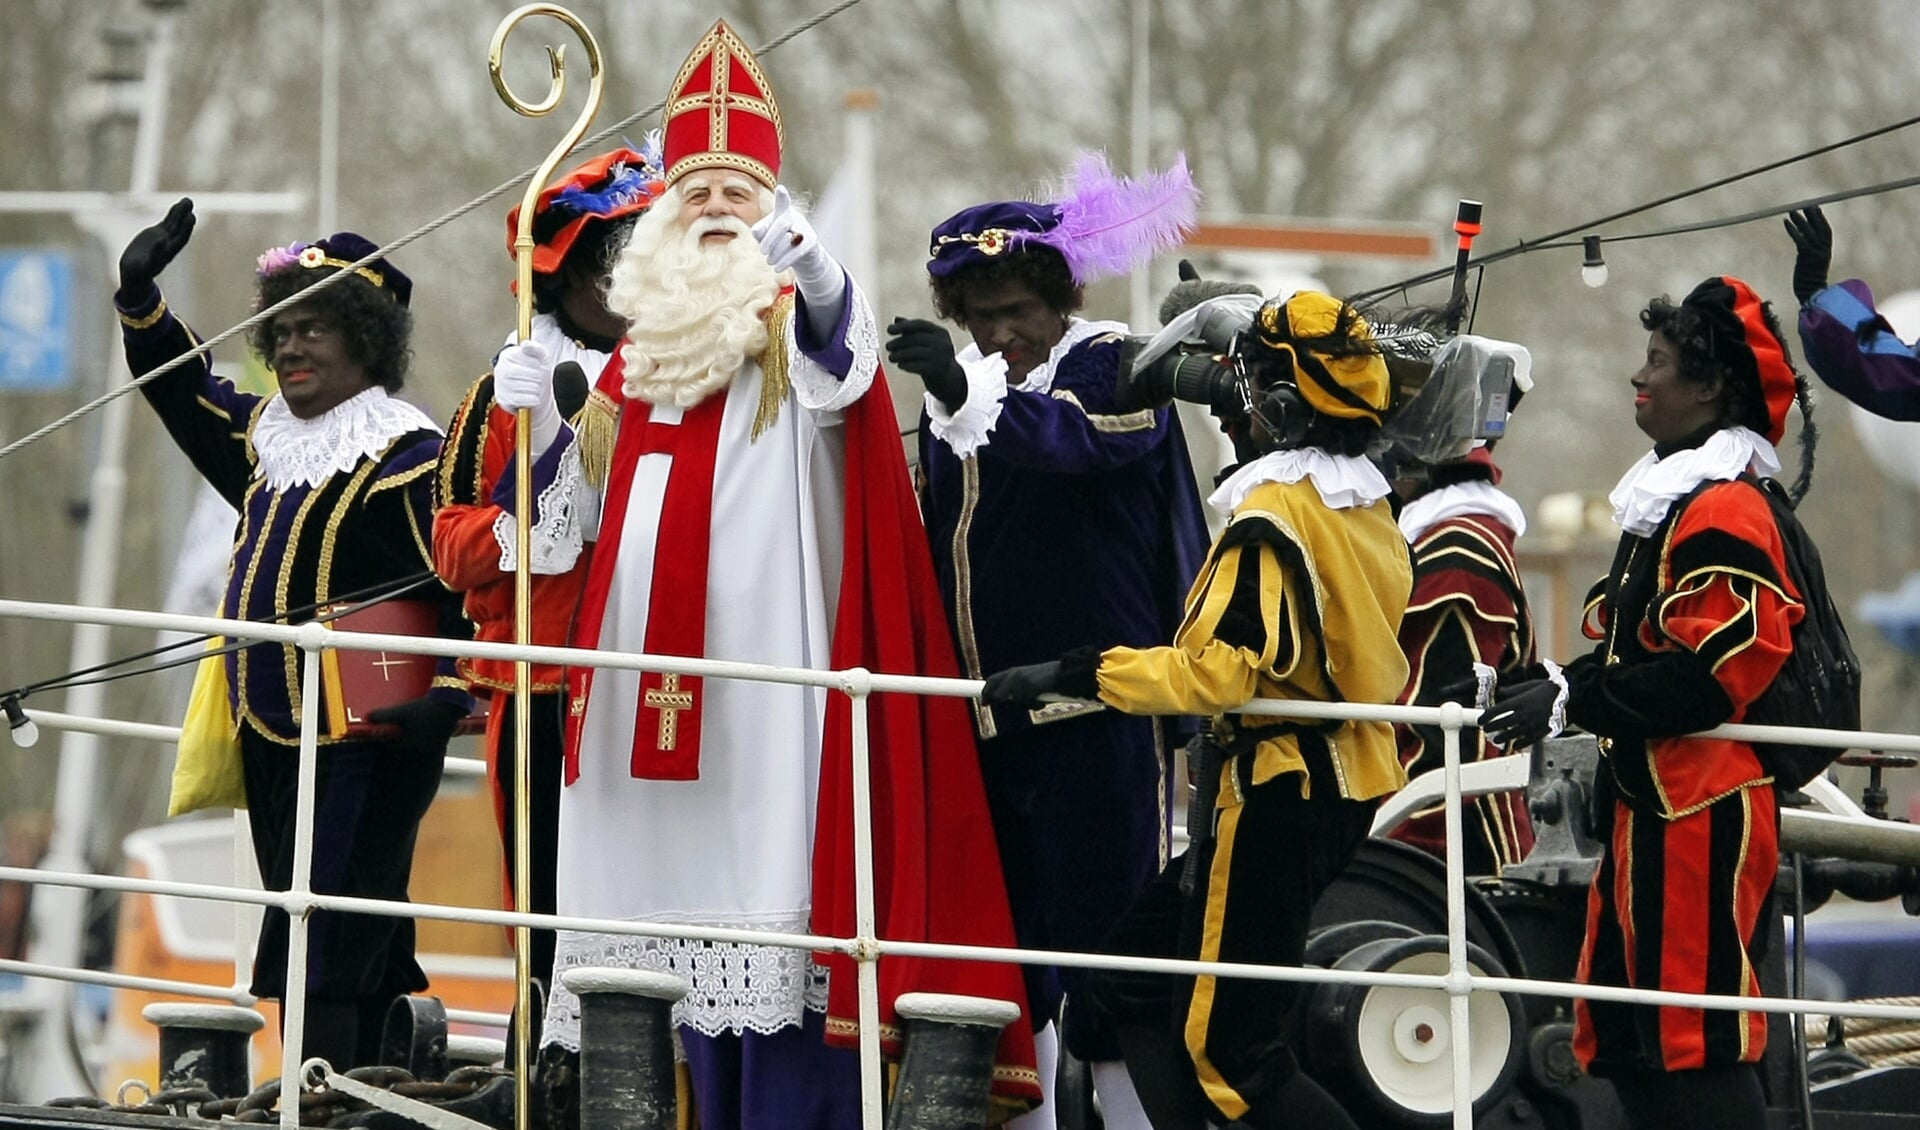 Intens Bel terug herwinnen Intocht Sinterklaas 2009 in Schiedam - Nederlands Dagblad. De  kwaliteitskrant van christelijk Nederland